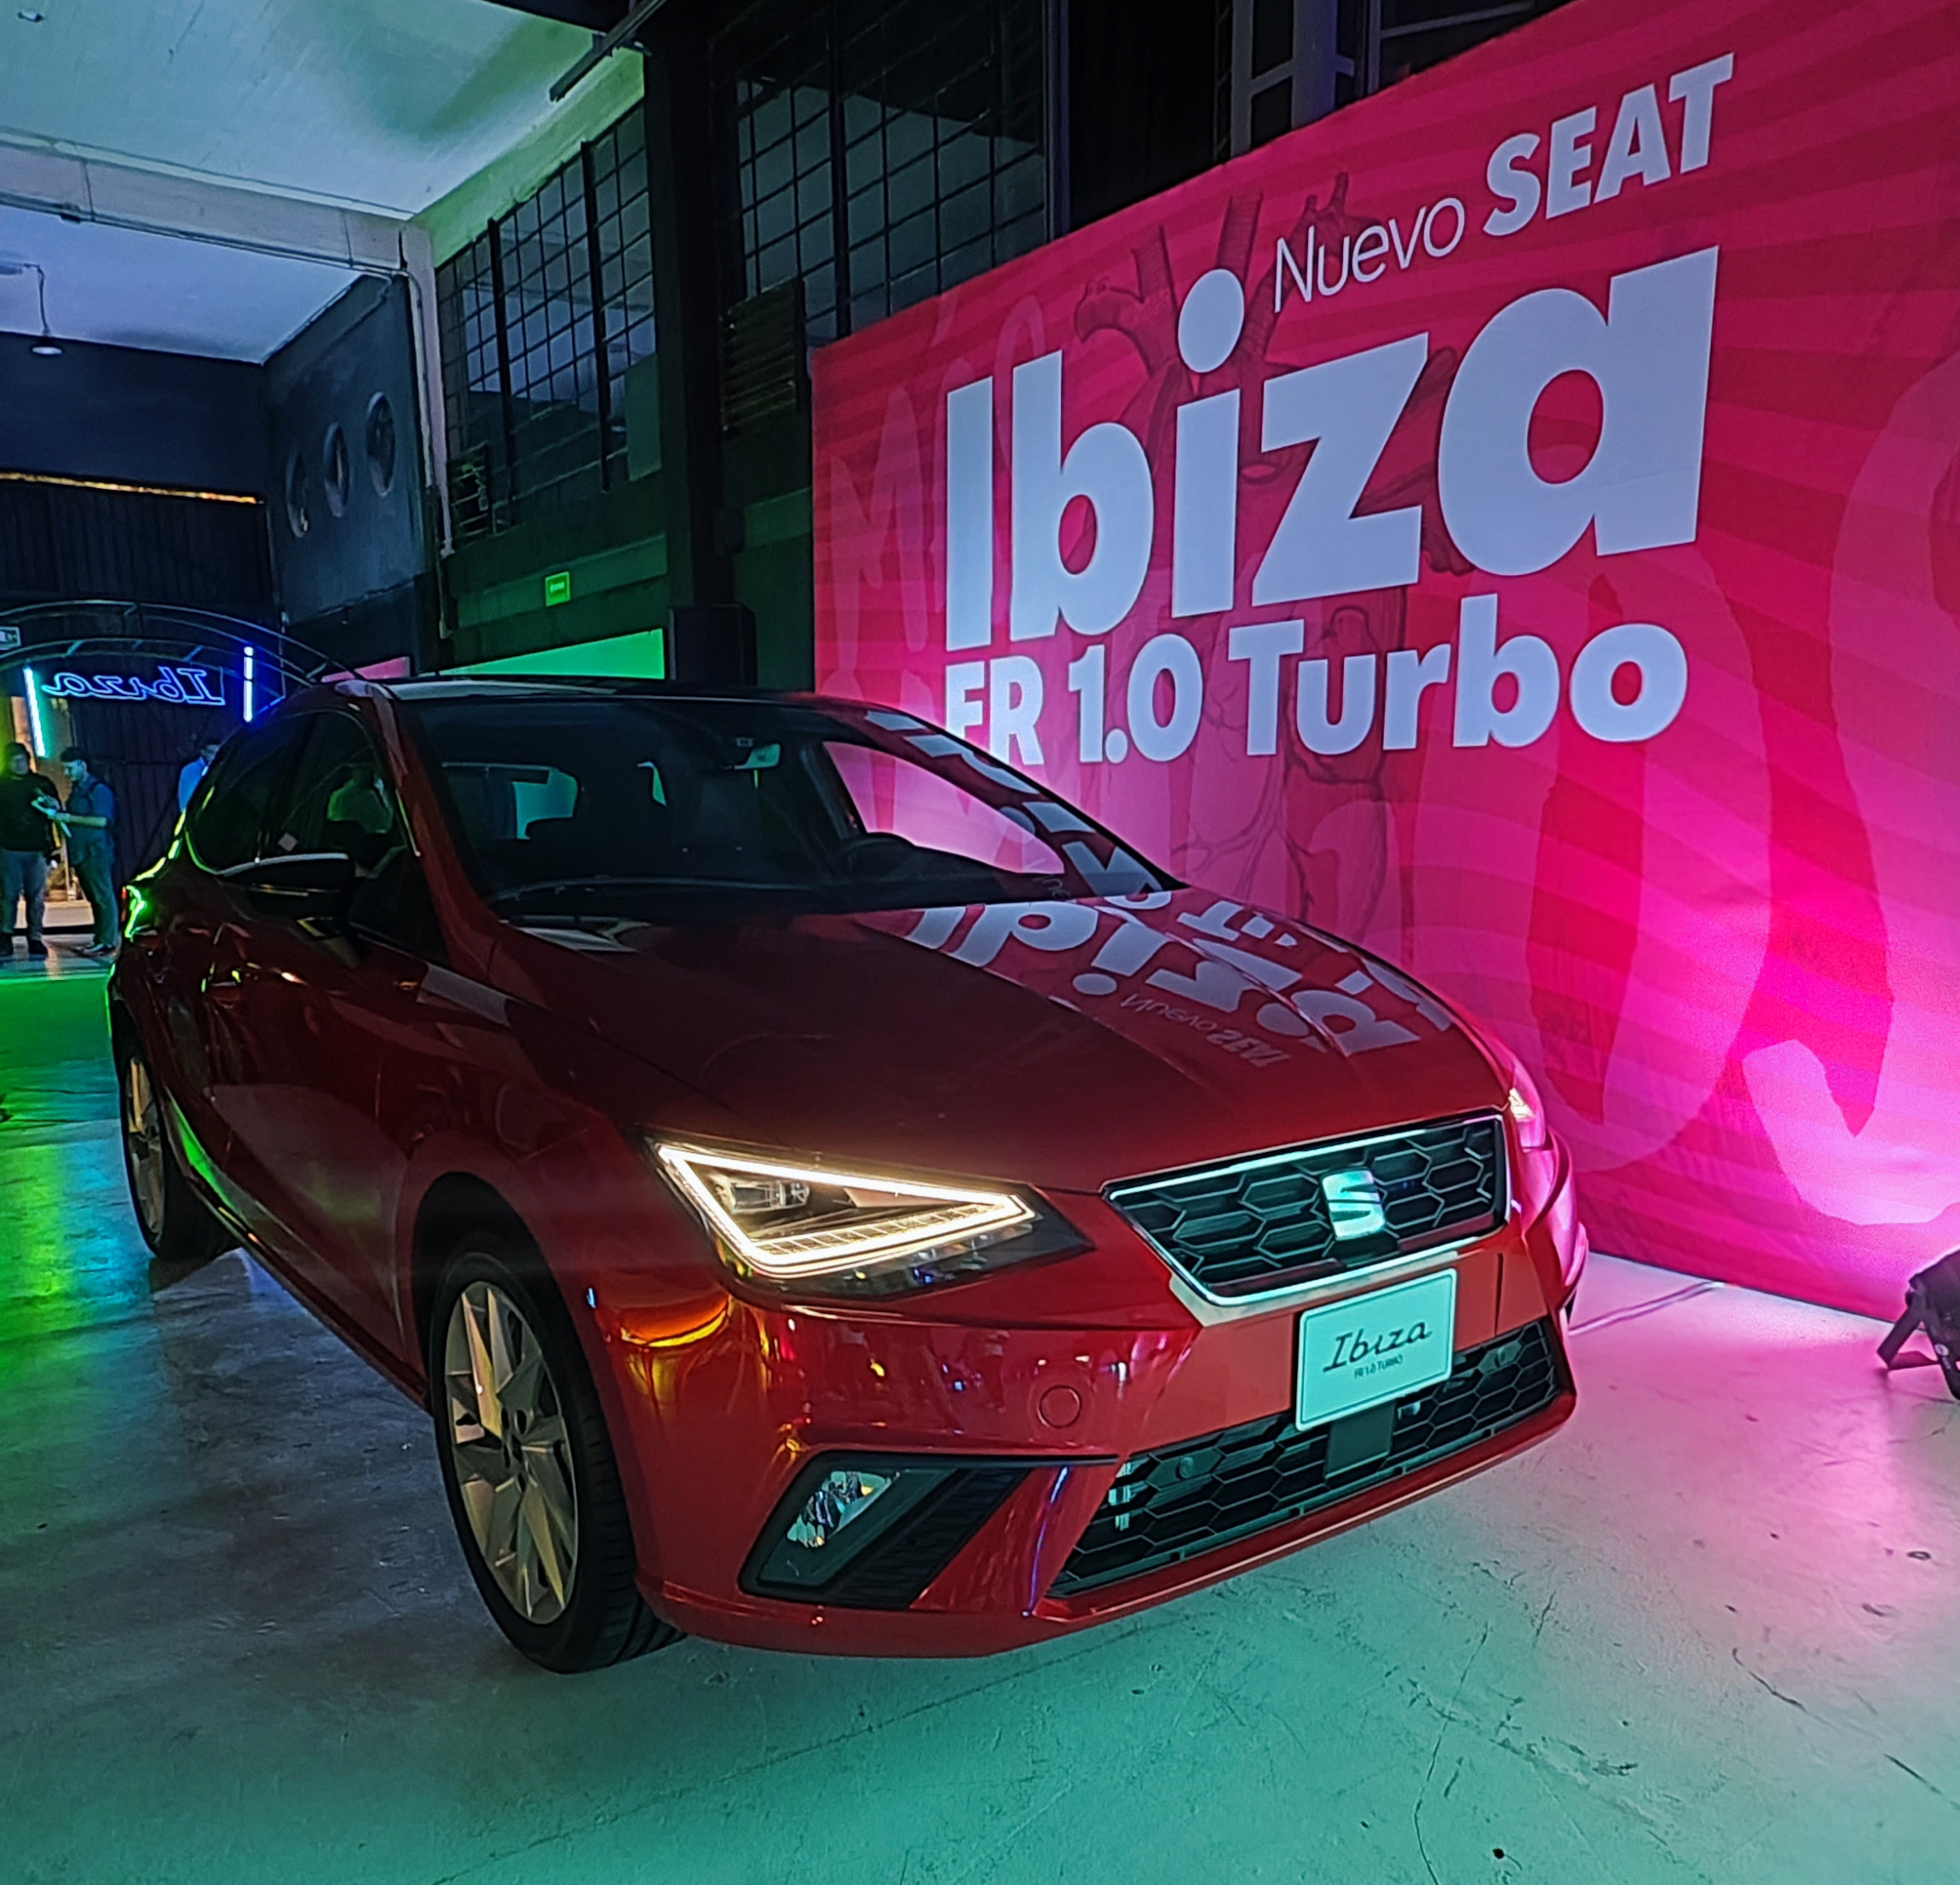 SEAT Ibiza FR 1.0 Turbo, para los seguidores del hatchback